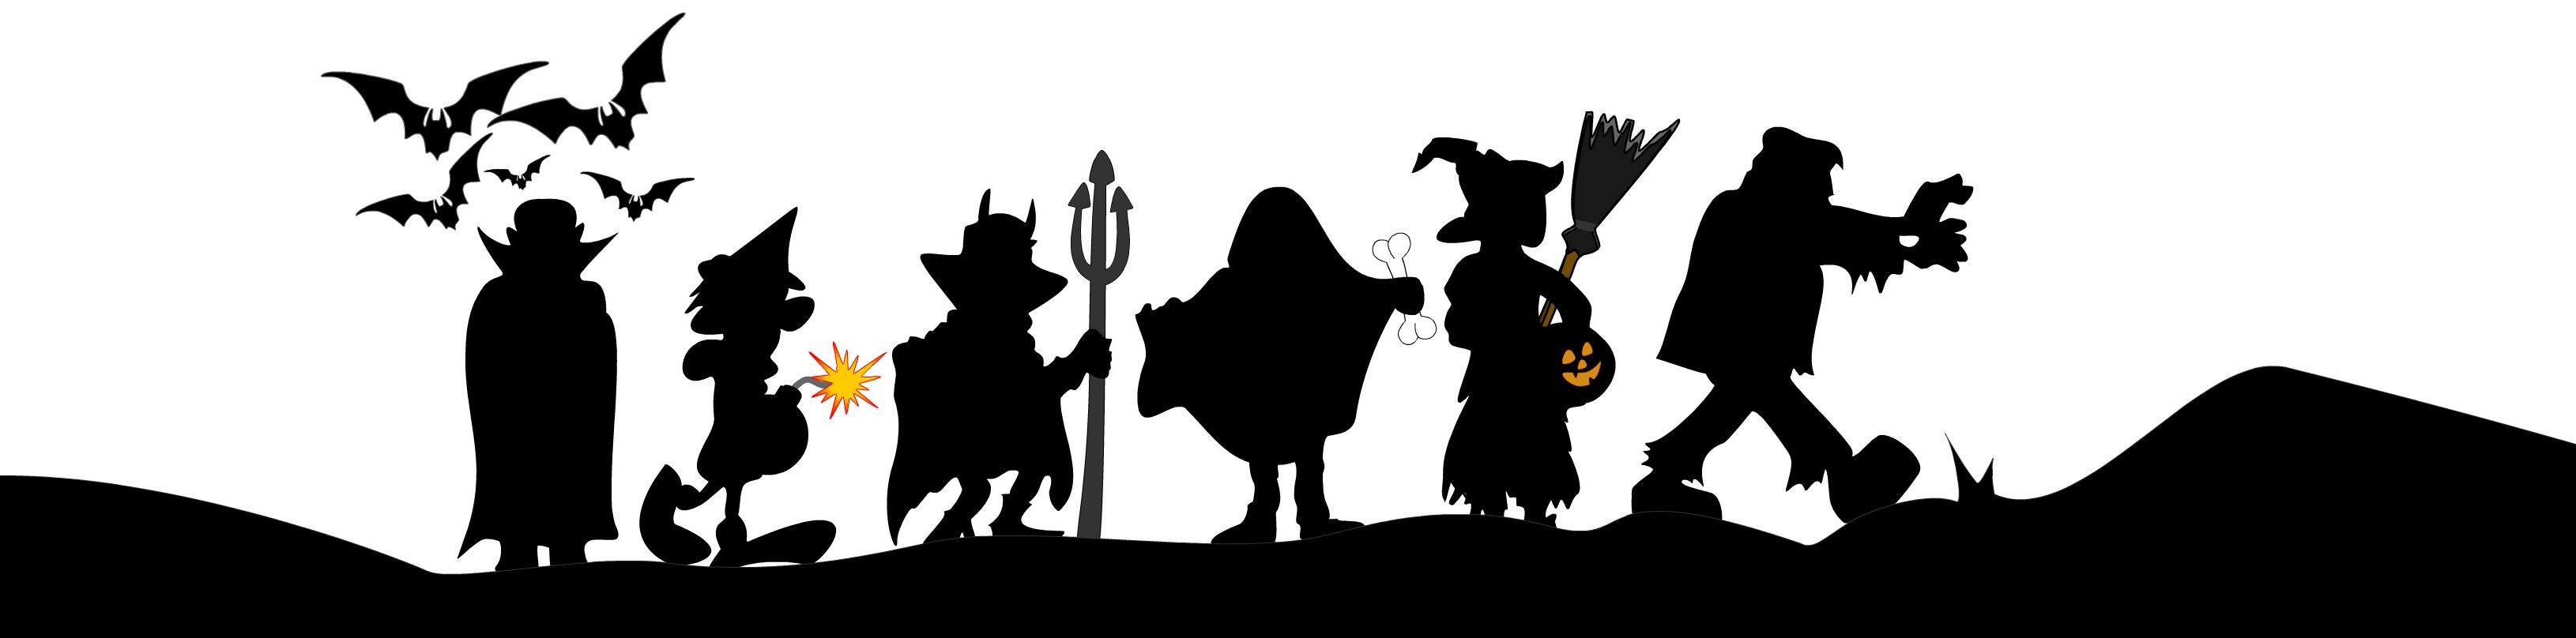 Halloween, Halloween Wallpaper for Desktop. V.791